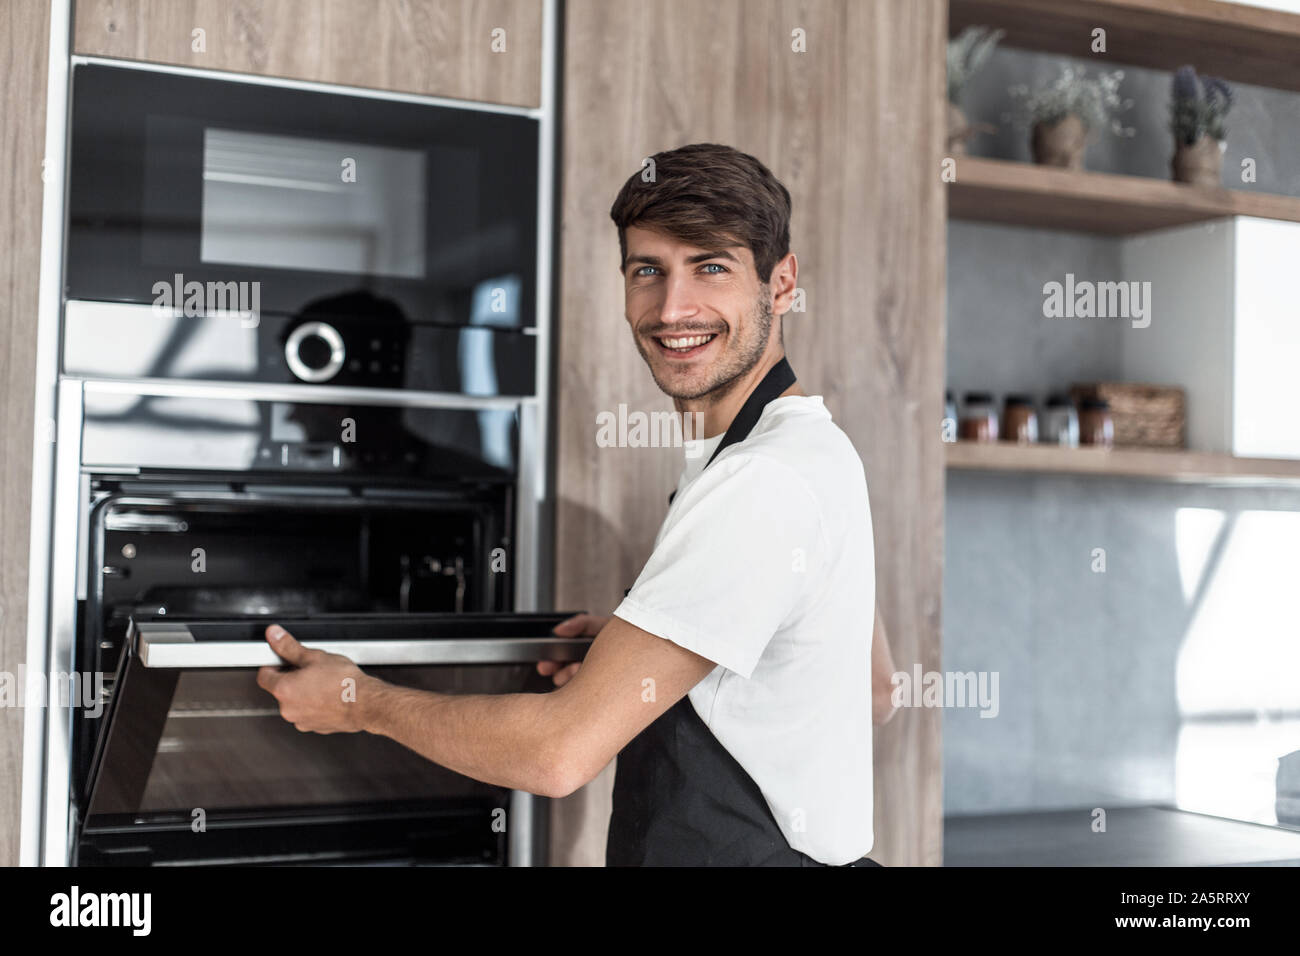 L'homme de l'ouverture du four dans la cuisine maison Photo Stock - Alamy